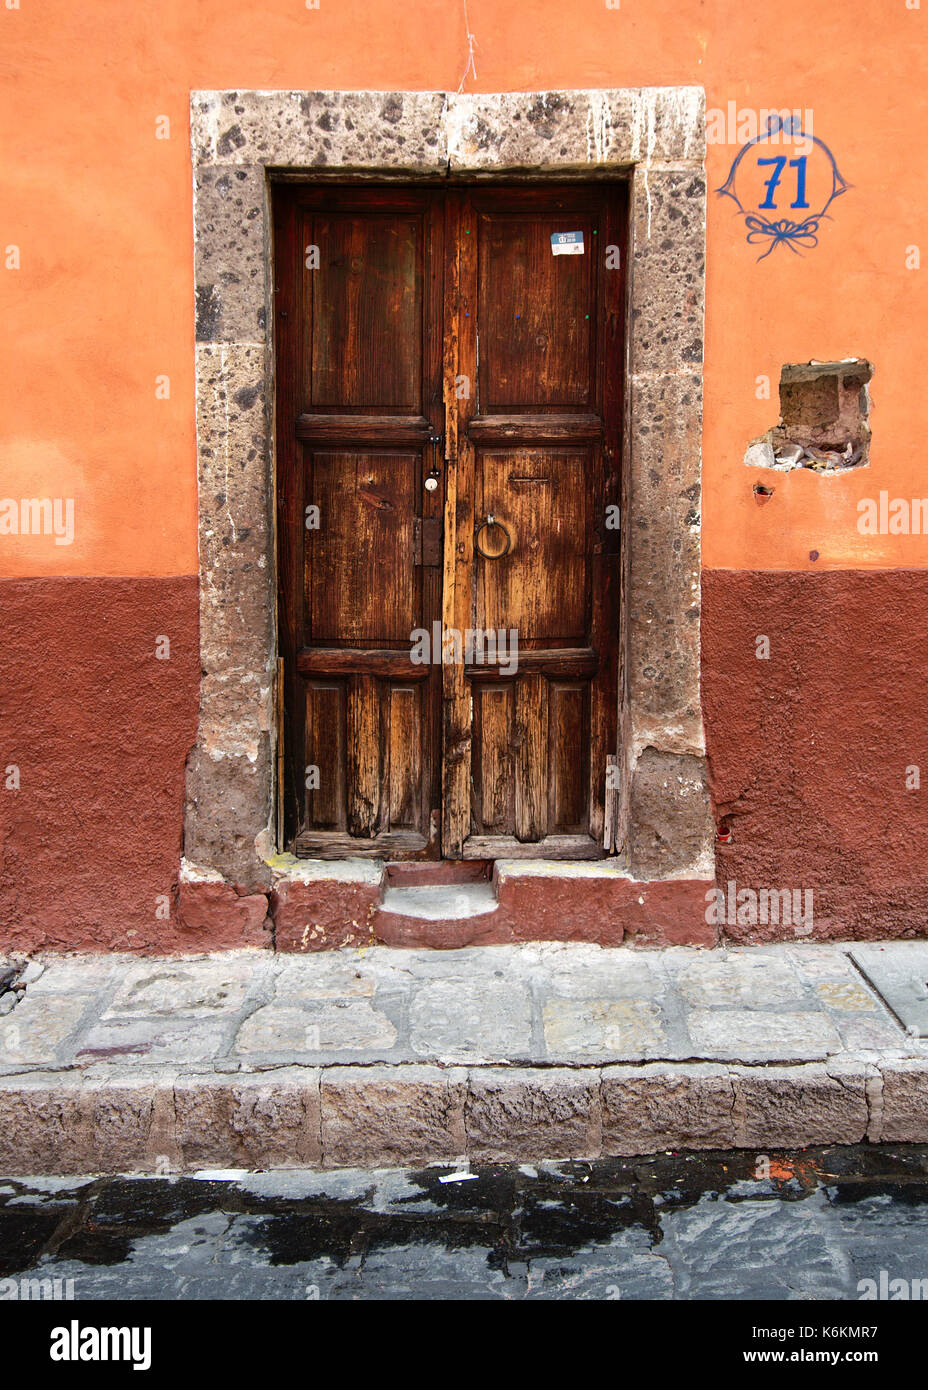 San Miguel de Allende, Guanajuato, Mexique - 2013 : une porte dans le style typique de la ville. Banque D'Images